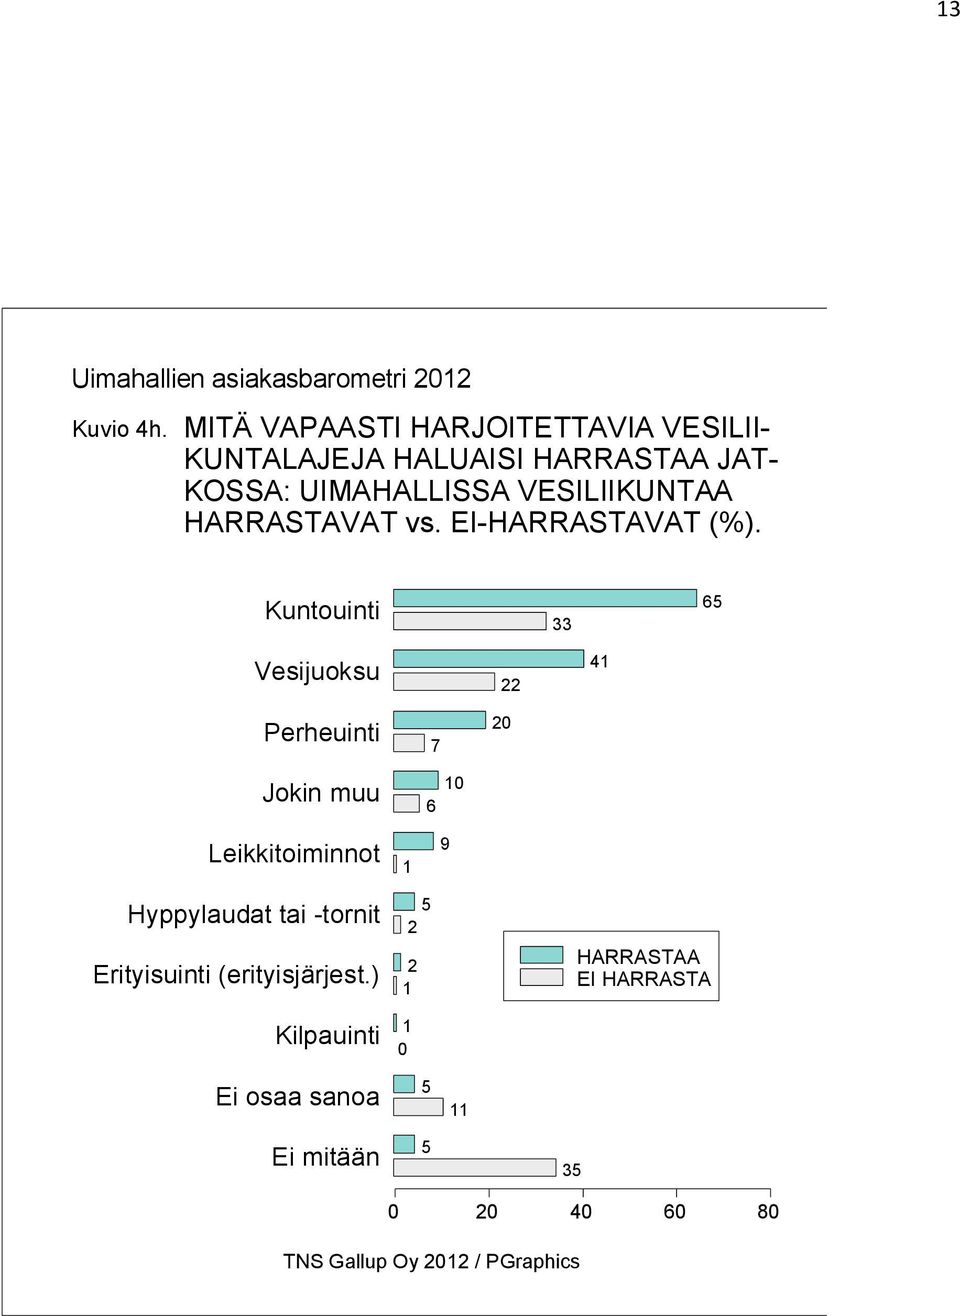 UIMAHALLISSA VESILIIKUNTAA HARRASTAVAT vs. EI-HARRASTAVAT (%).